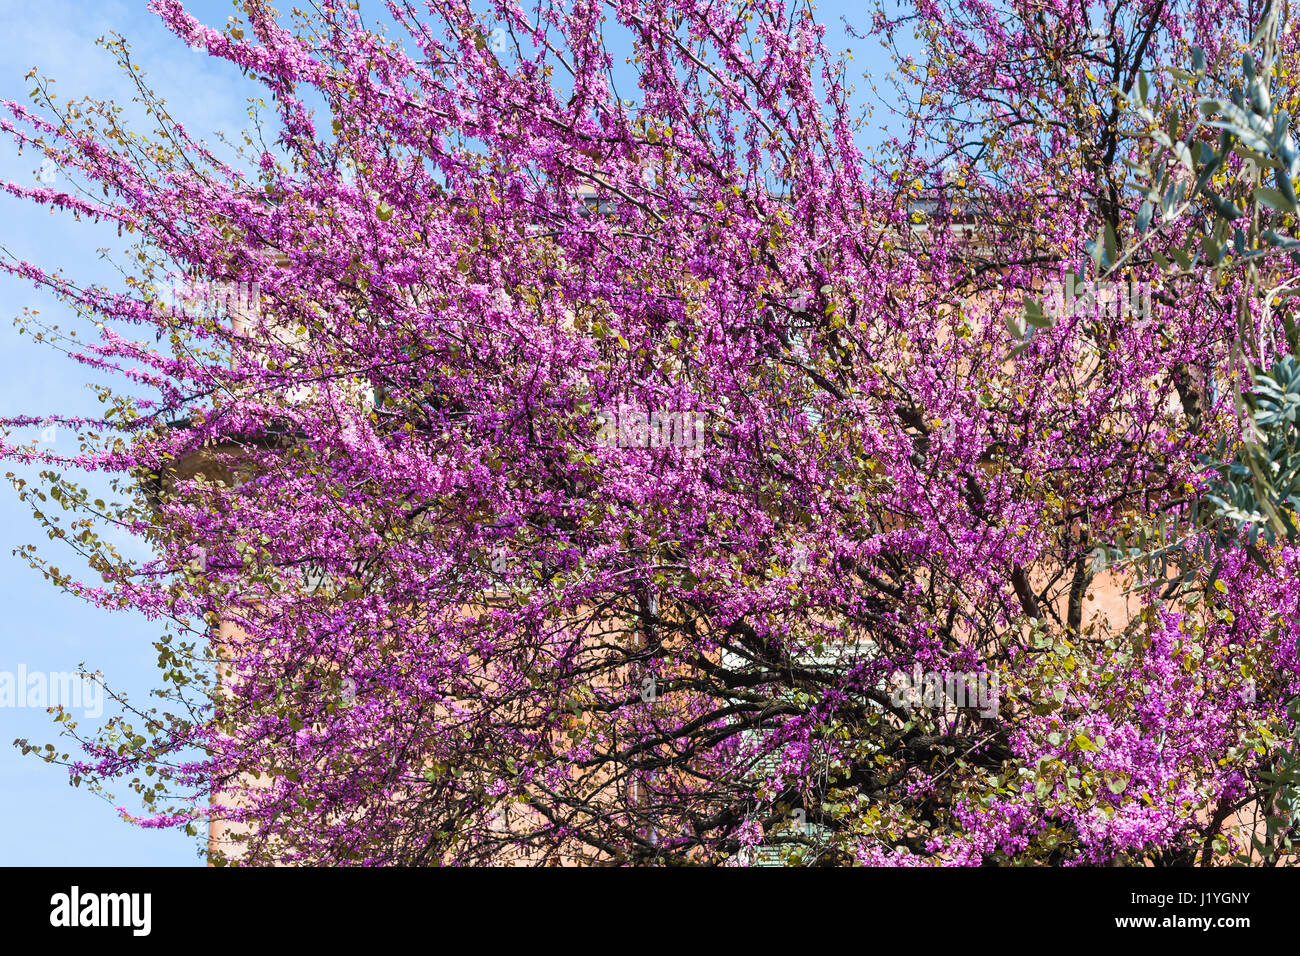 Voyage d'Italie - fleur rose de Cercis siliquastrum (arbre de Judée) dans la ville de Vérone au printemps Banque D'Images